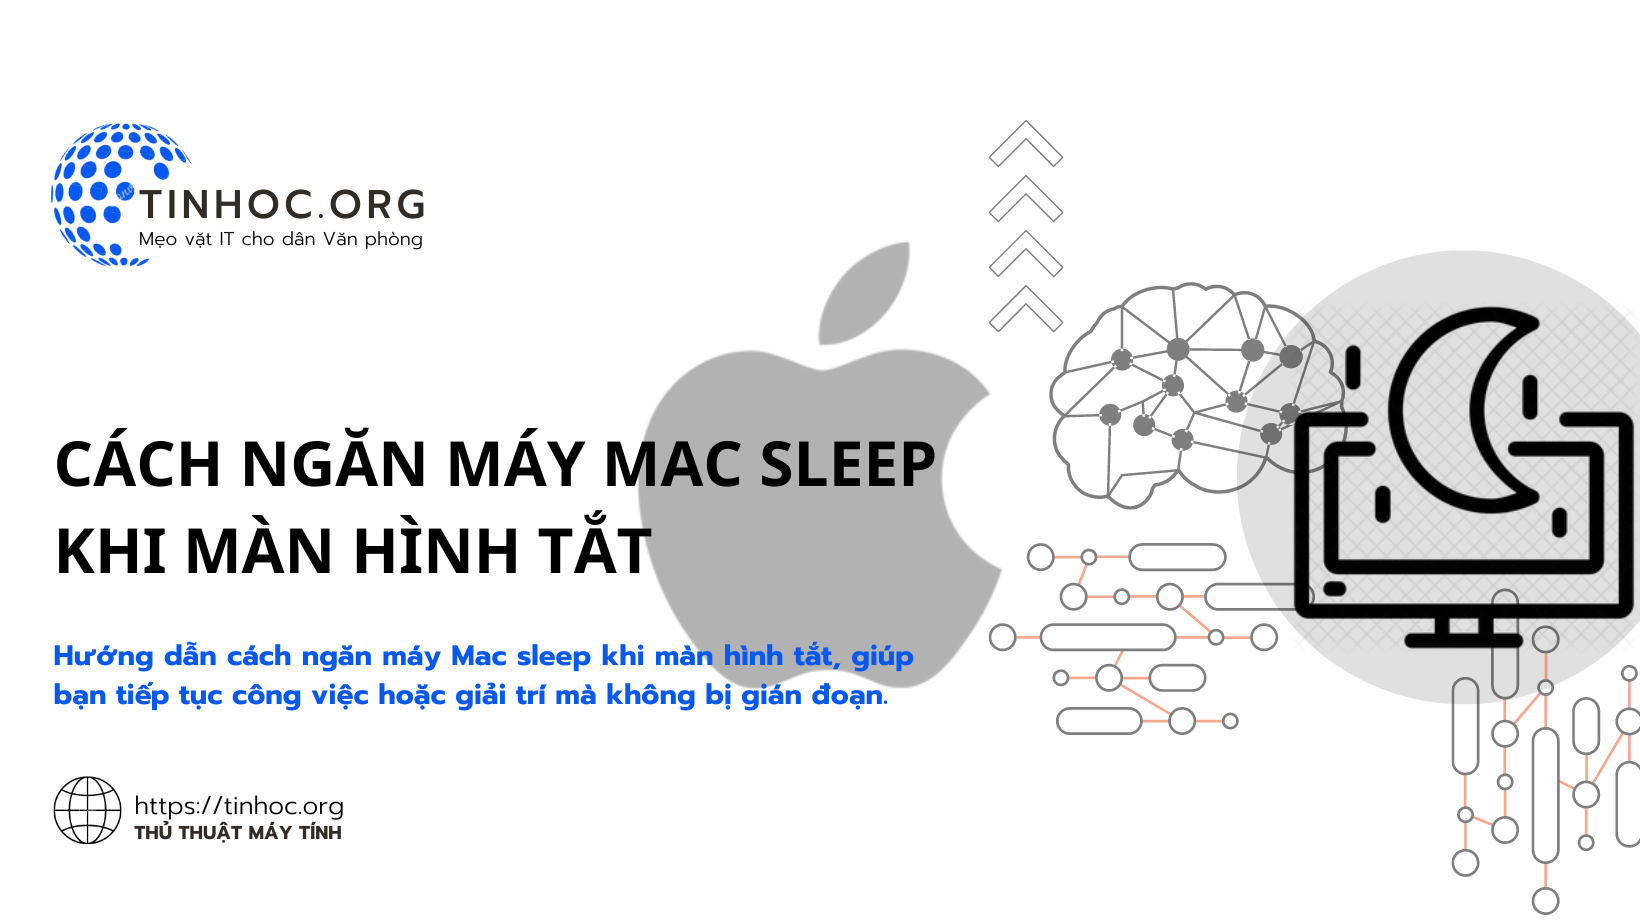 Hướng dẫn cách ngăn máy Mac sleep khi màn hình tắt, giúp bạn tiếp tục công việc hoặc giải trí mà không bị gián đoạn.